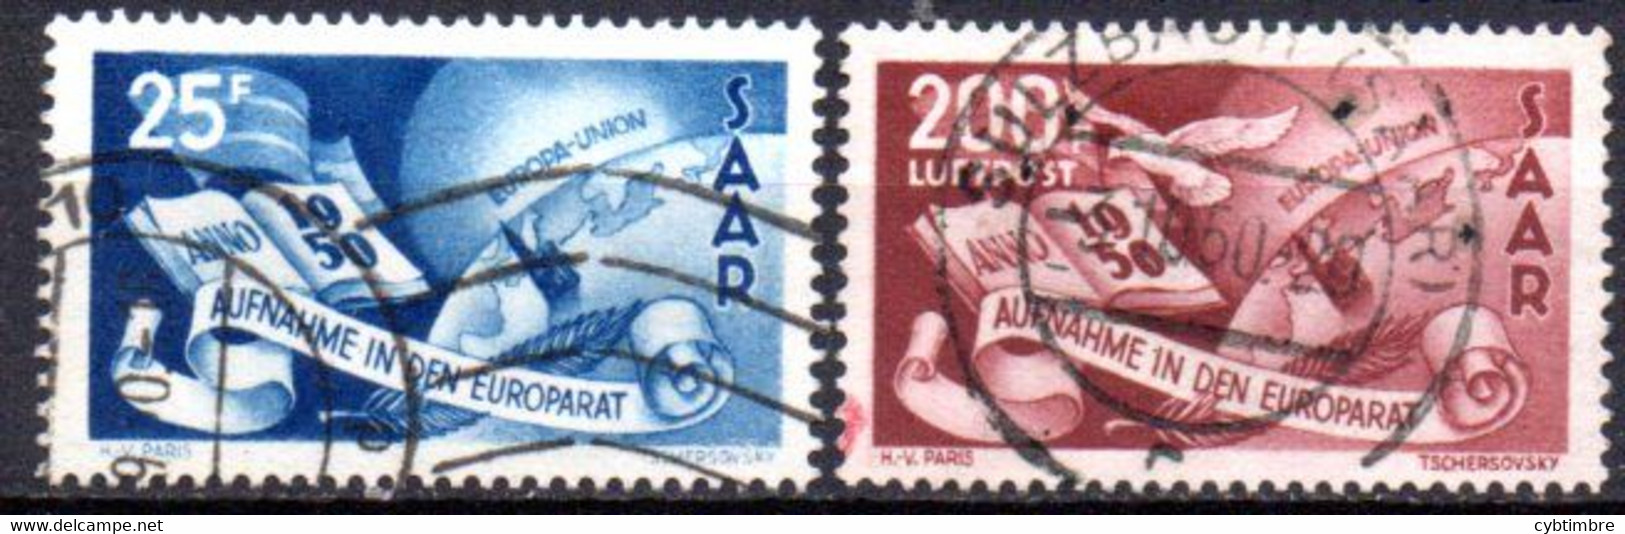 Sarre: Yvert N° 247 + A 13; UPU - Luftpost